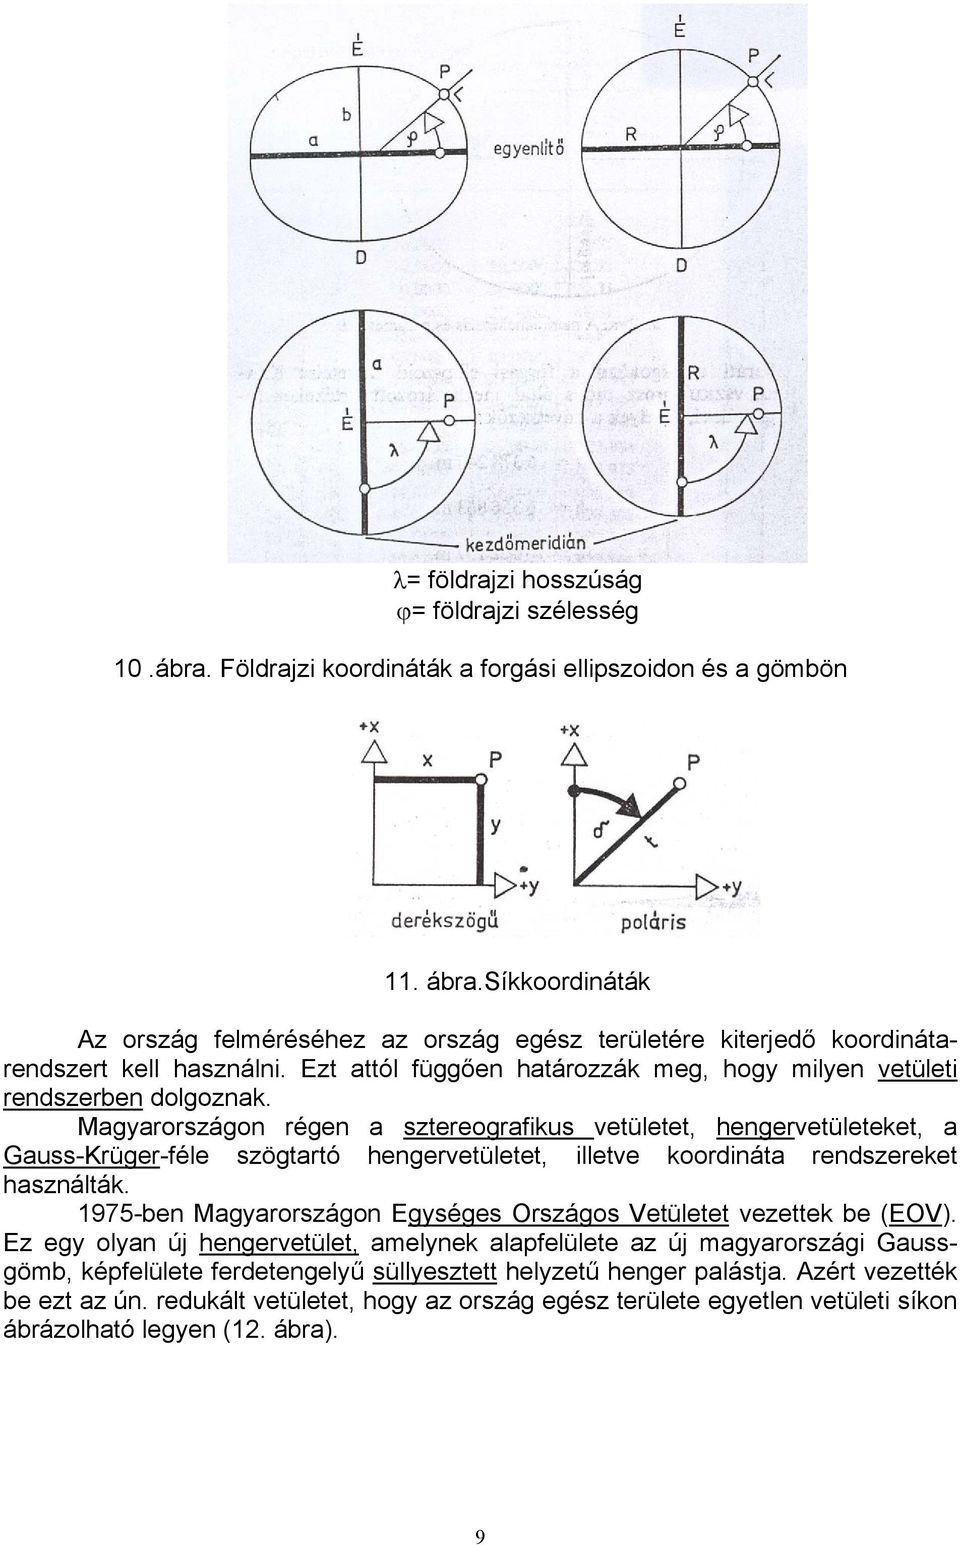 Magyarországon régen a sztereografikus vetületet, hengervetületeket, a Gauss-Krüger-féle szögtartó hengervetületet, illetve koordináta rendszereket használták.